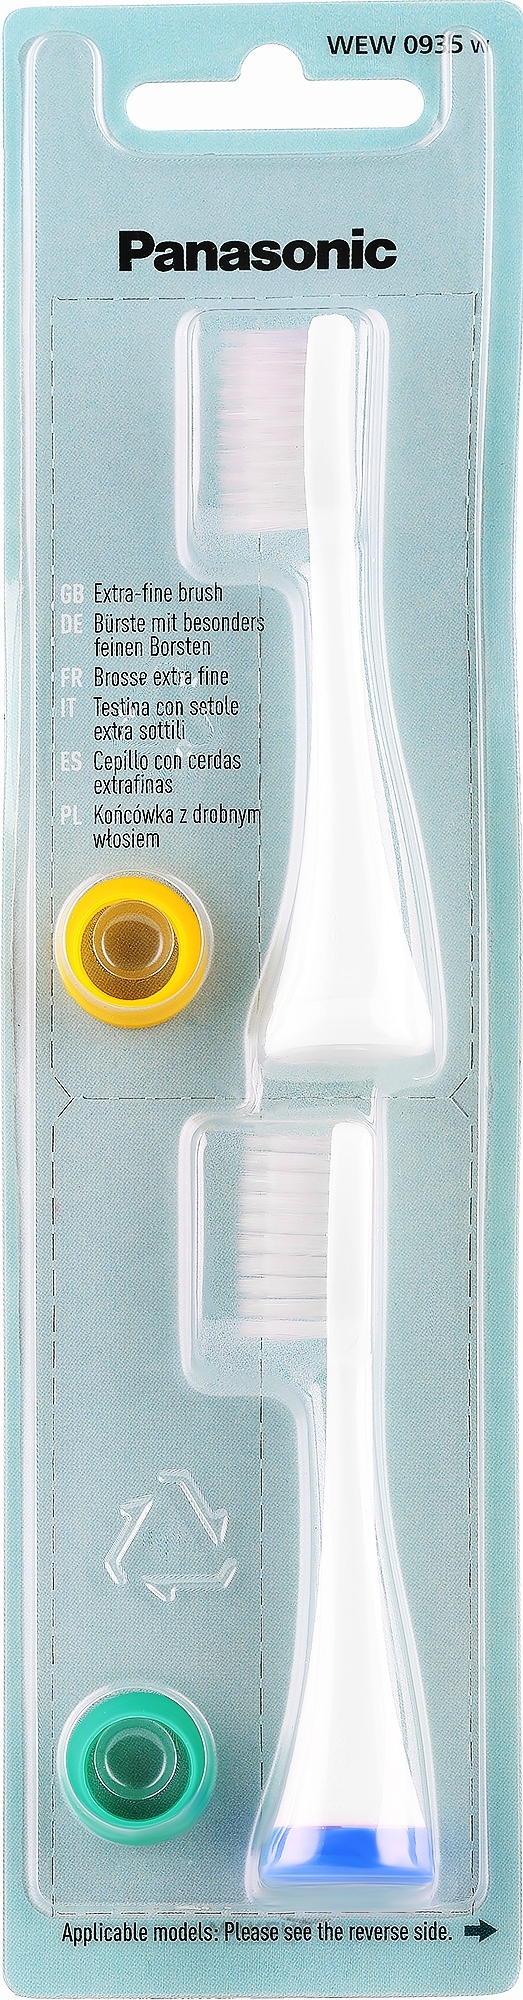 Zahnbürstenkopf für elektrische Zahnbürste 2 St. WEW0935W830 - Panasonic  — Bild 2 St.